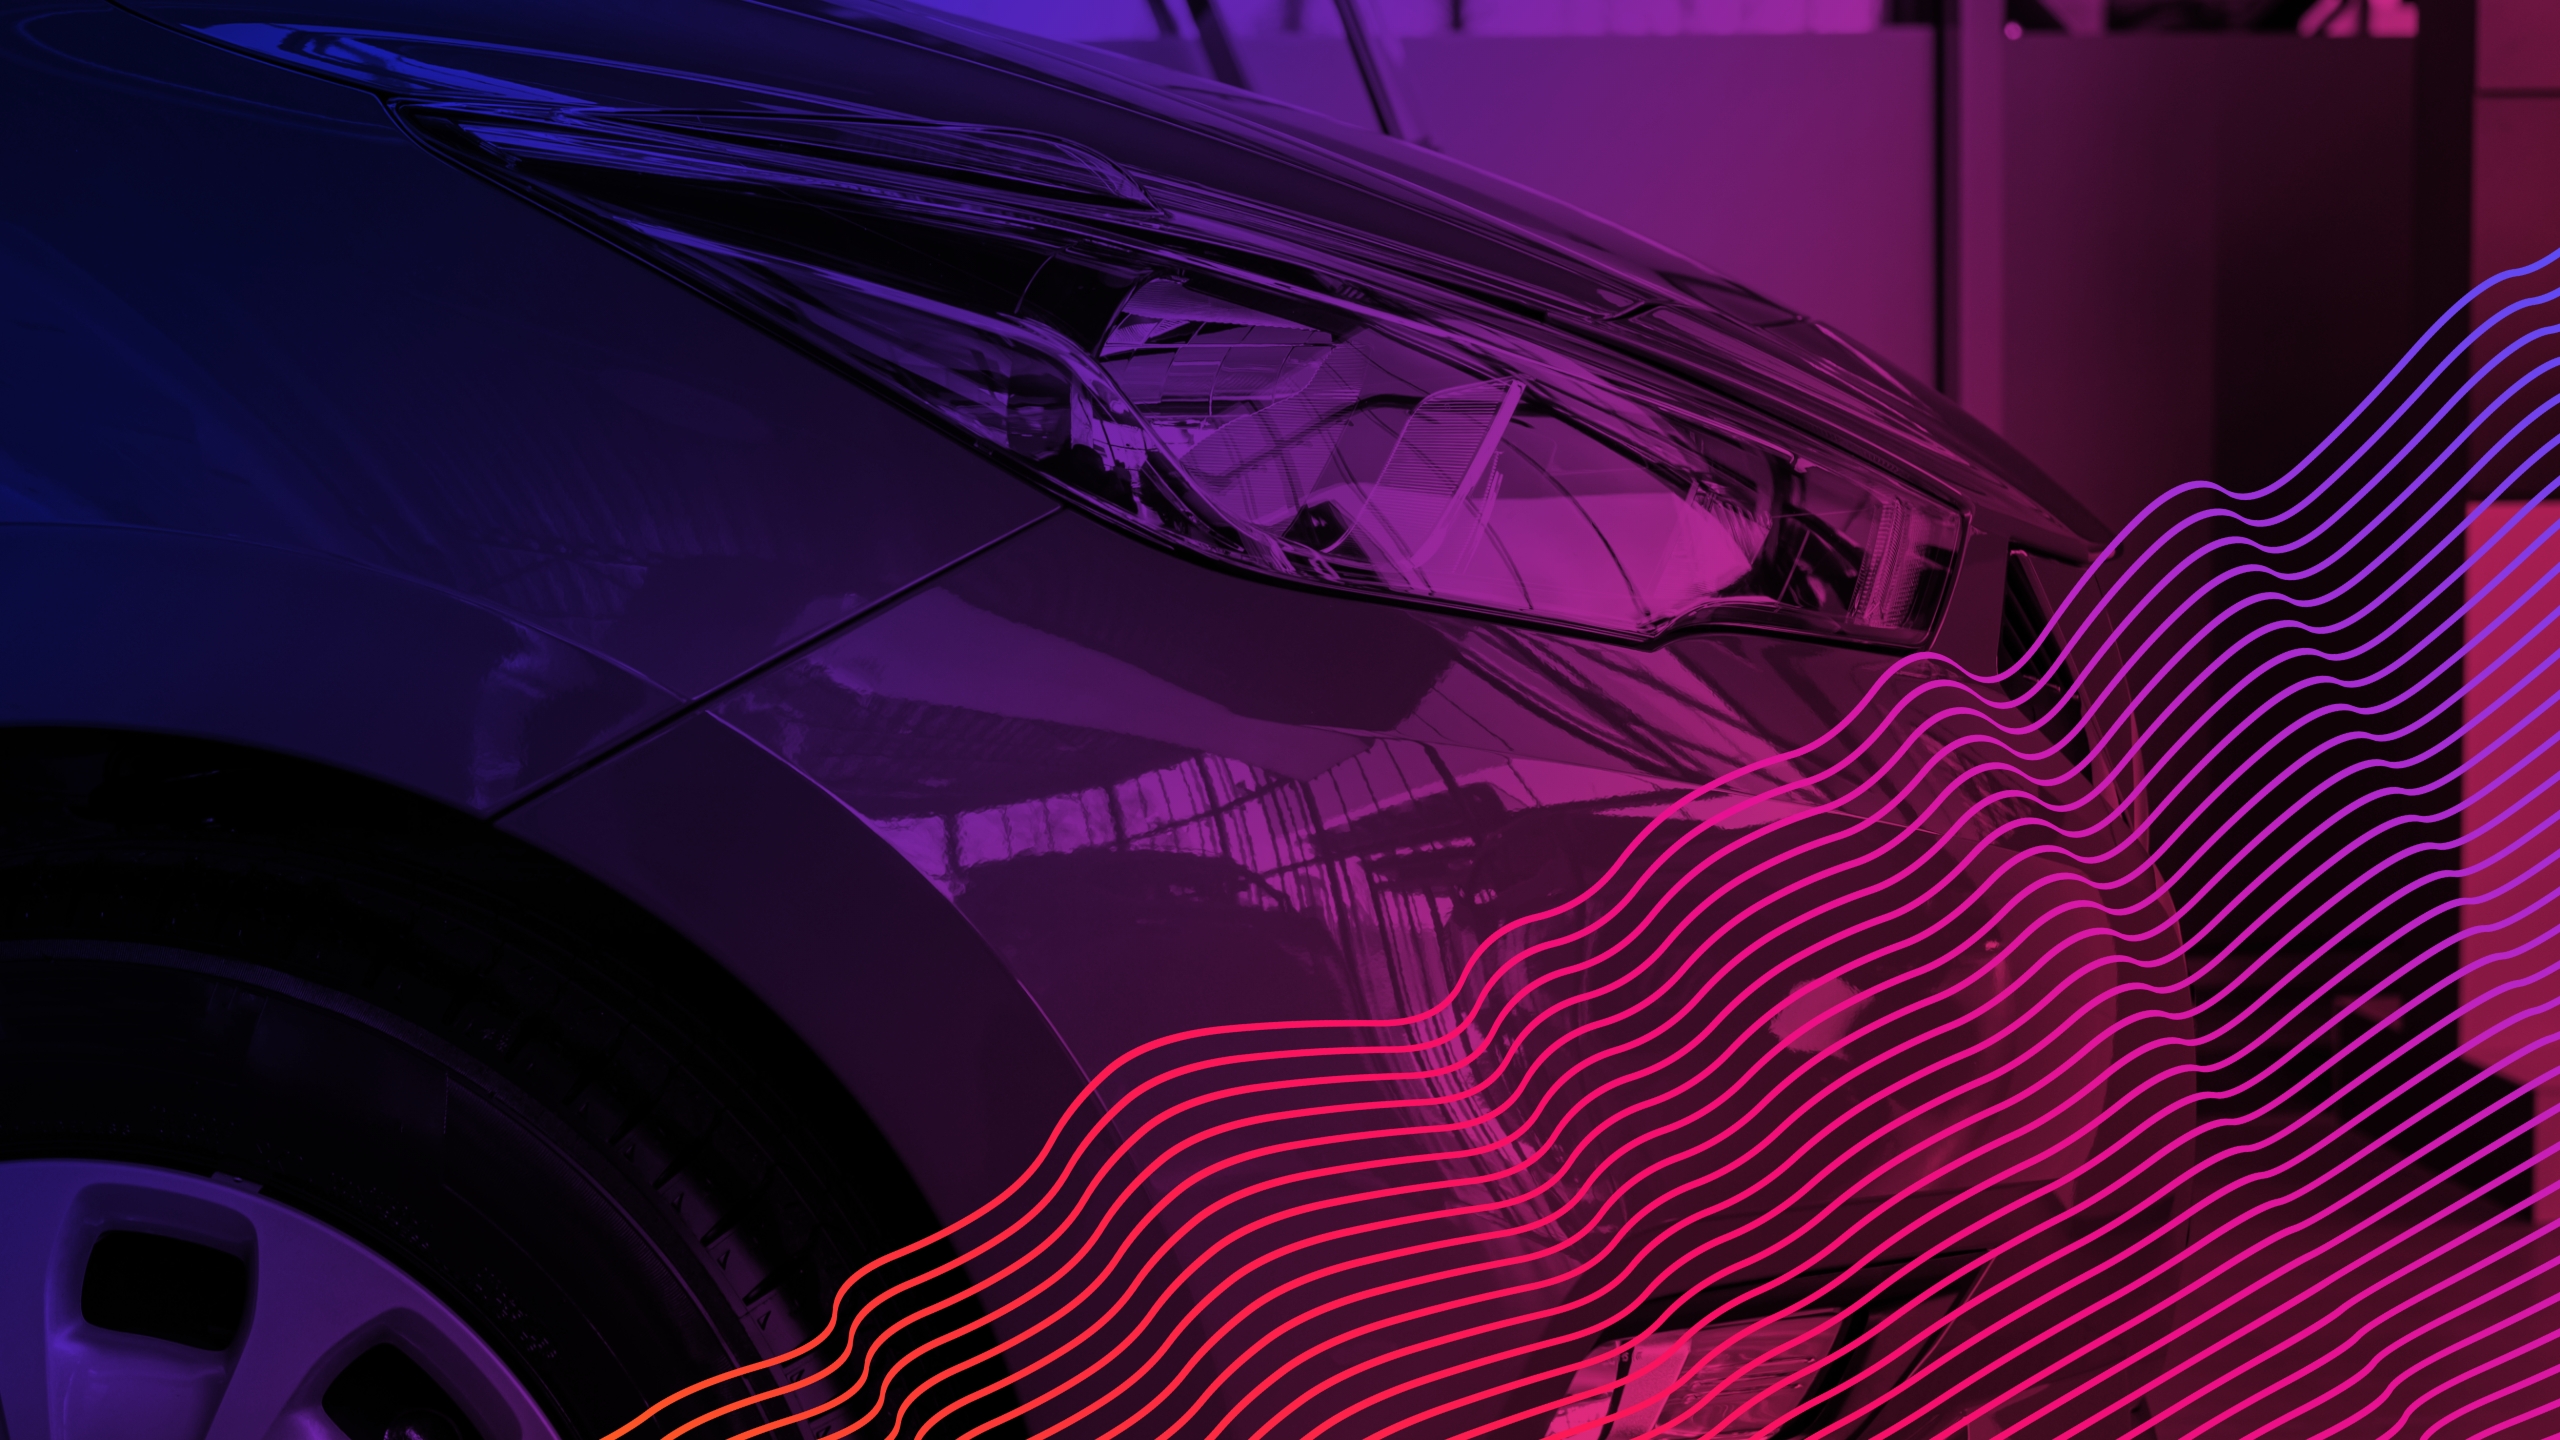 Die Vorderseite eines Autos mit einer violetten Überlagerung über dem Bild